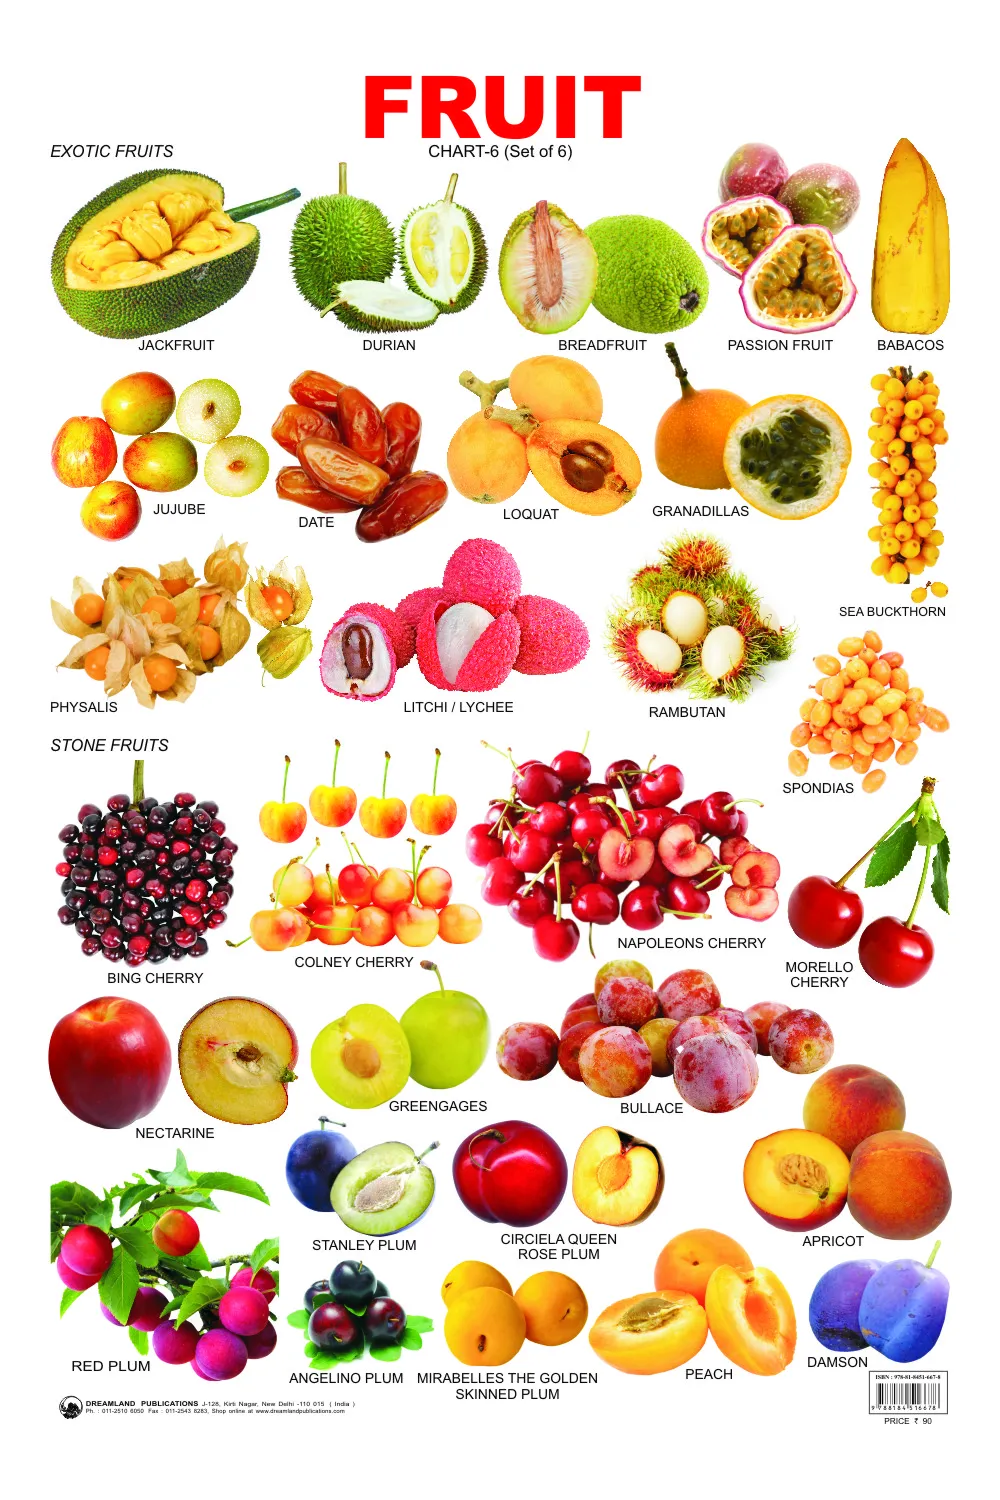 Название фруктов. Название овощей фруктов и ягод. Фрукты и ягоды с названиями. Названия фруктов для детей.